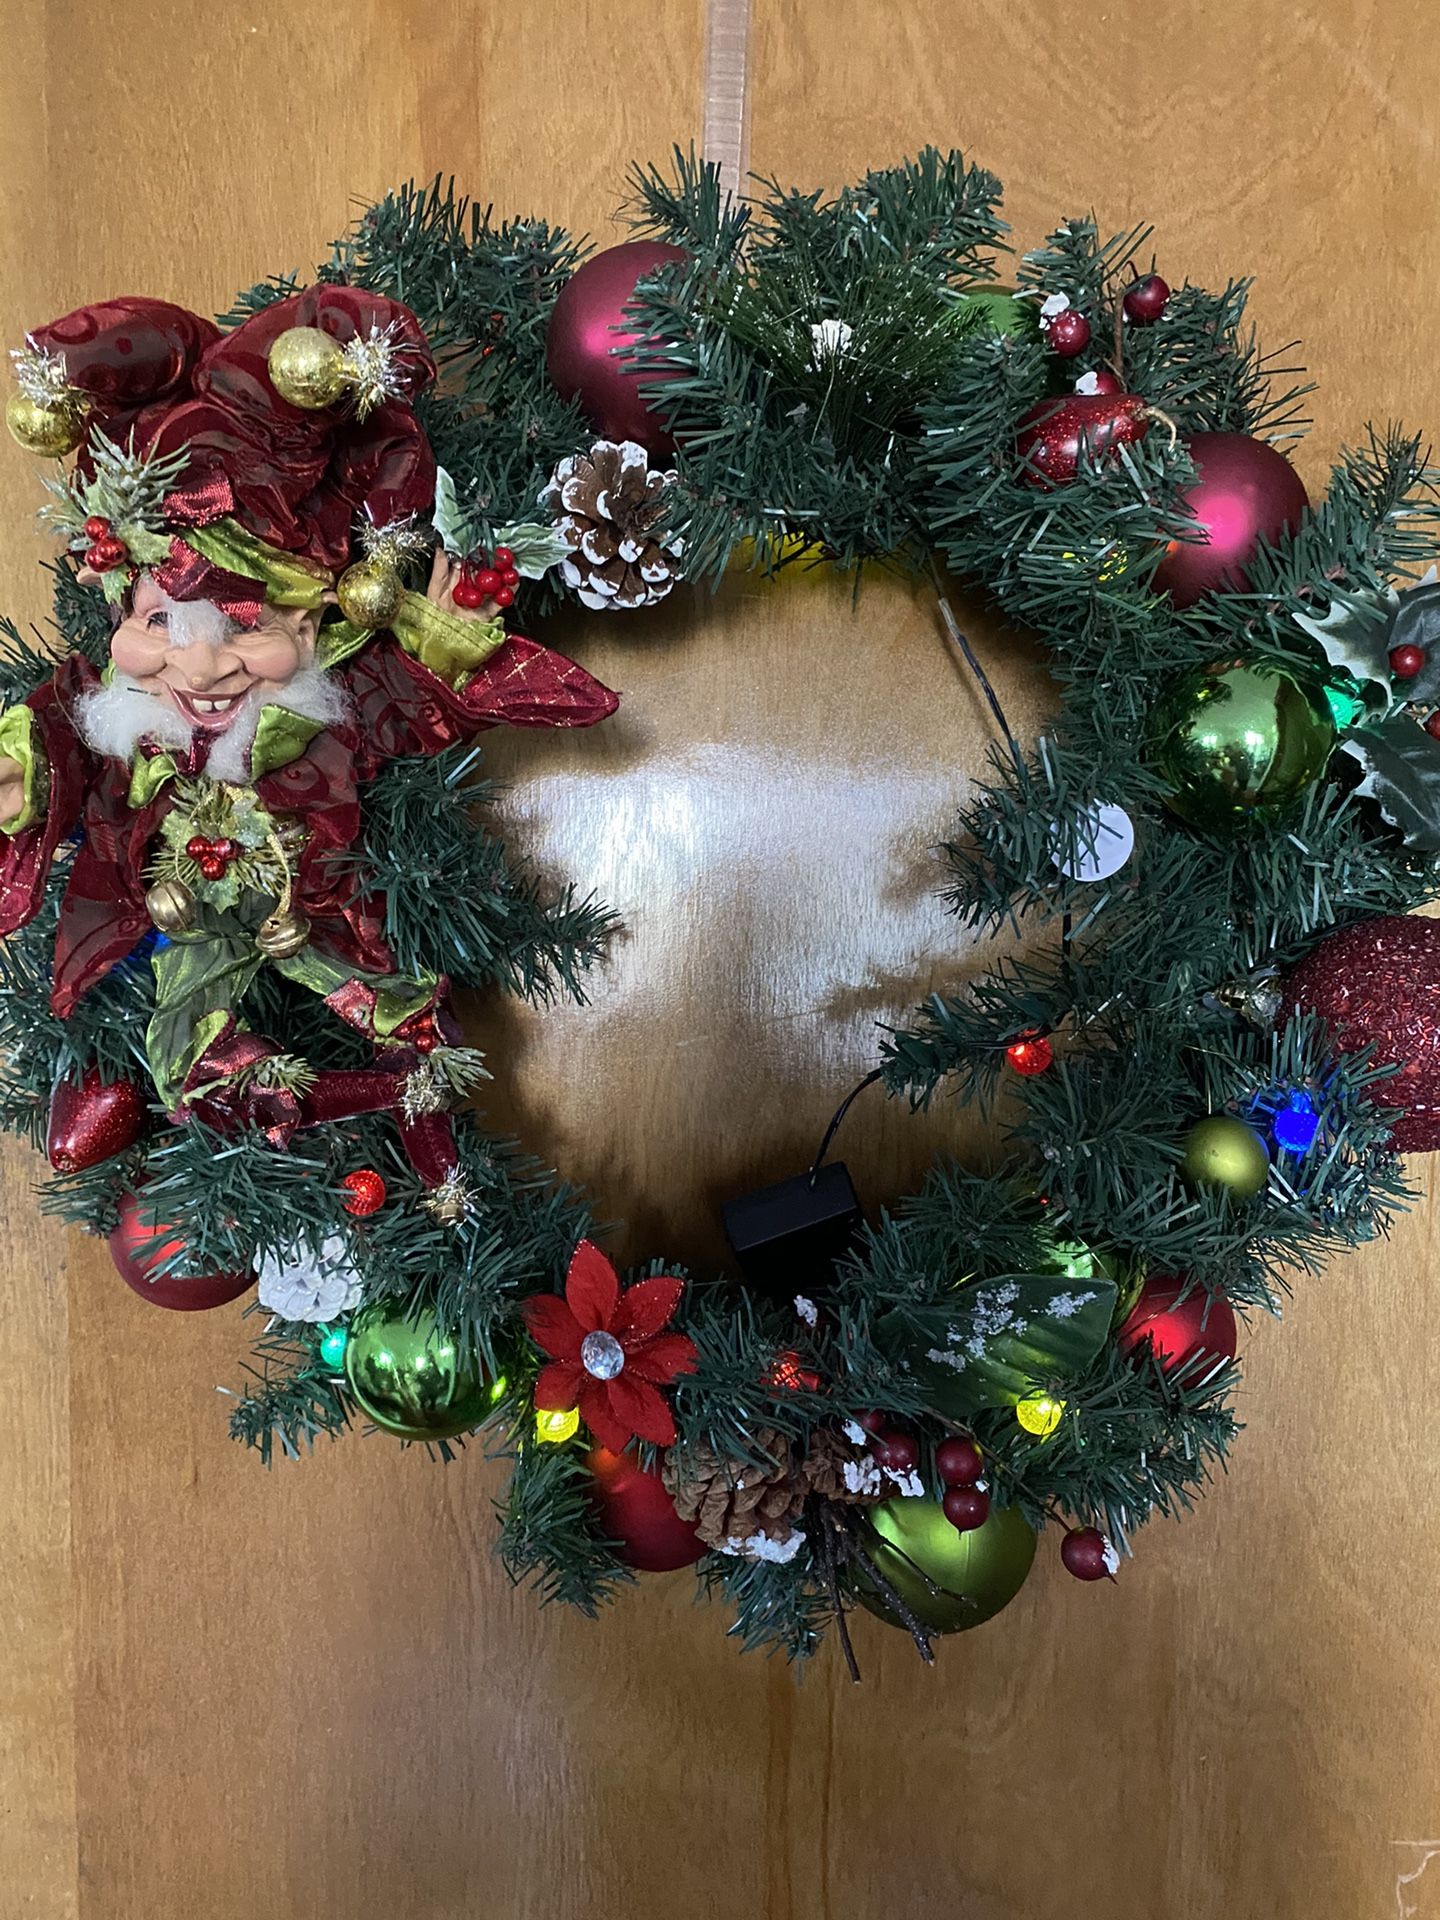 Lighted Christmas elf wreath